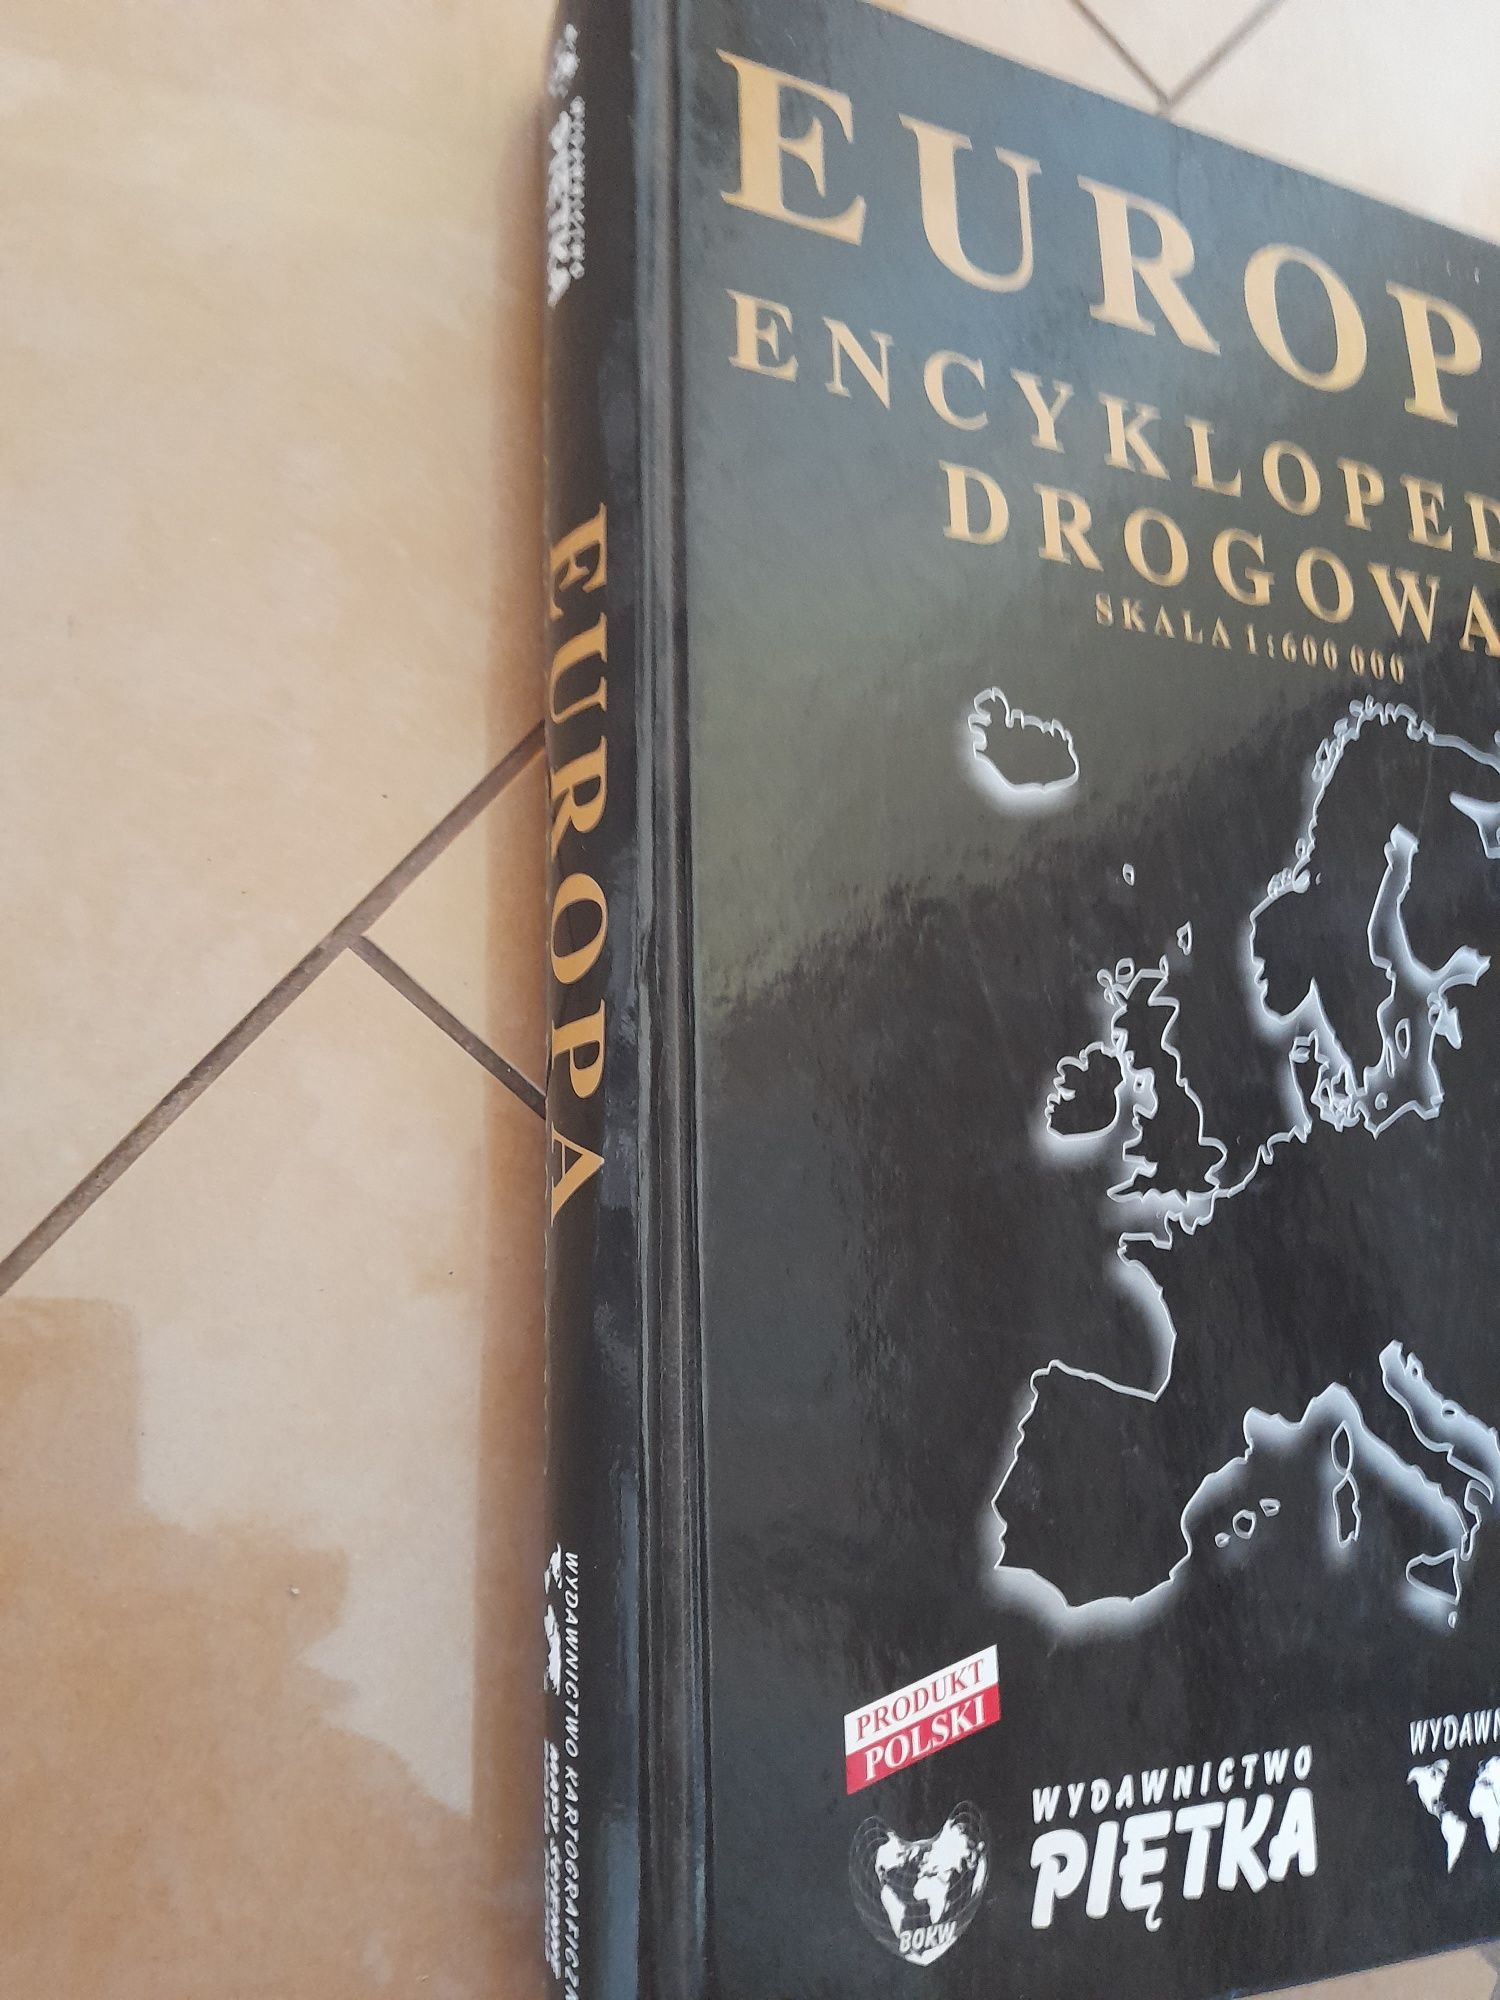 Europa encyklopedia drogowa wydawnictwo Piętka